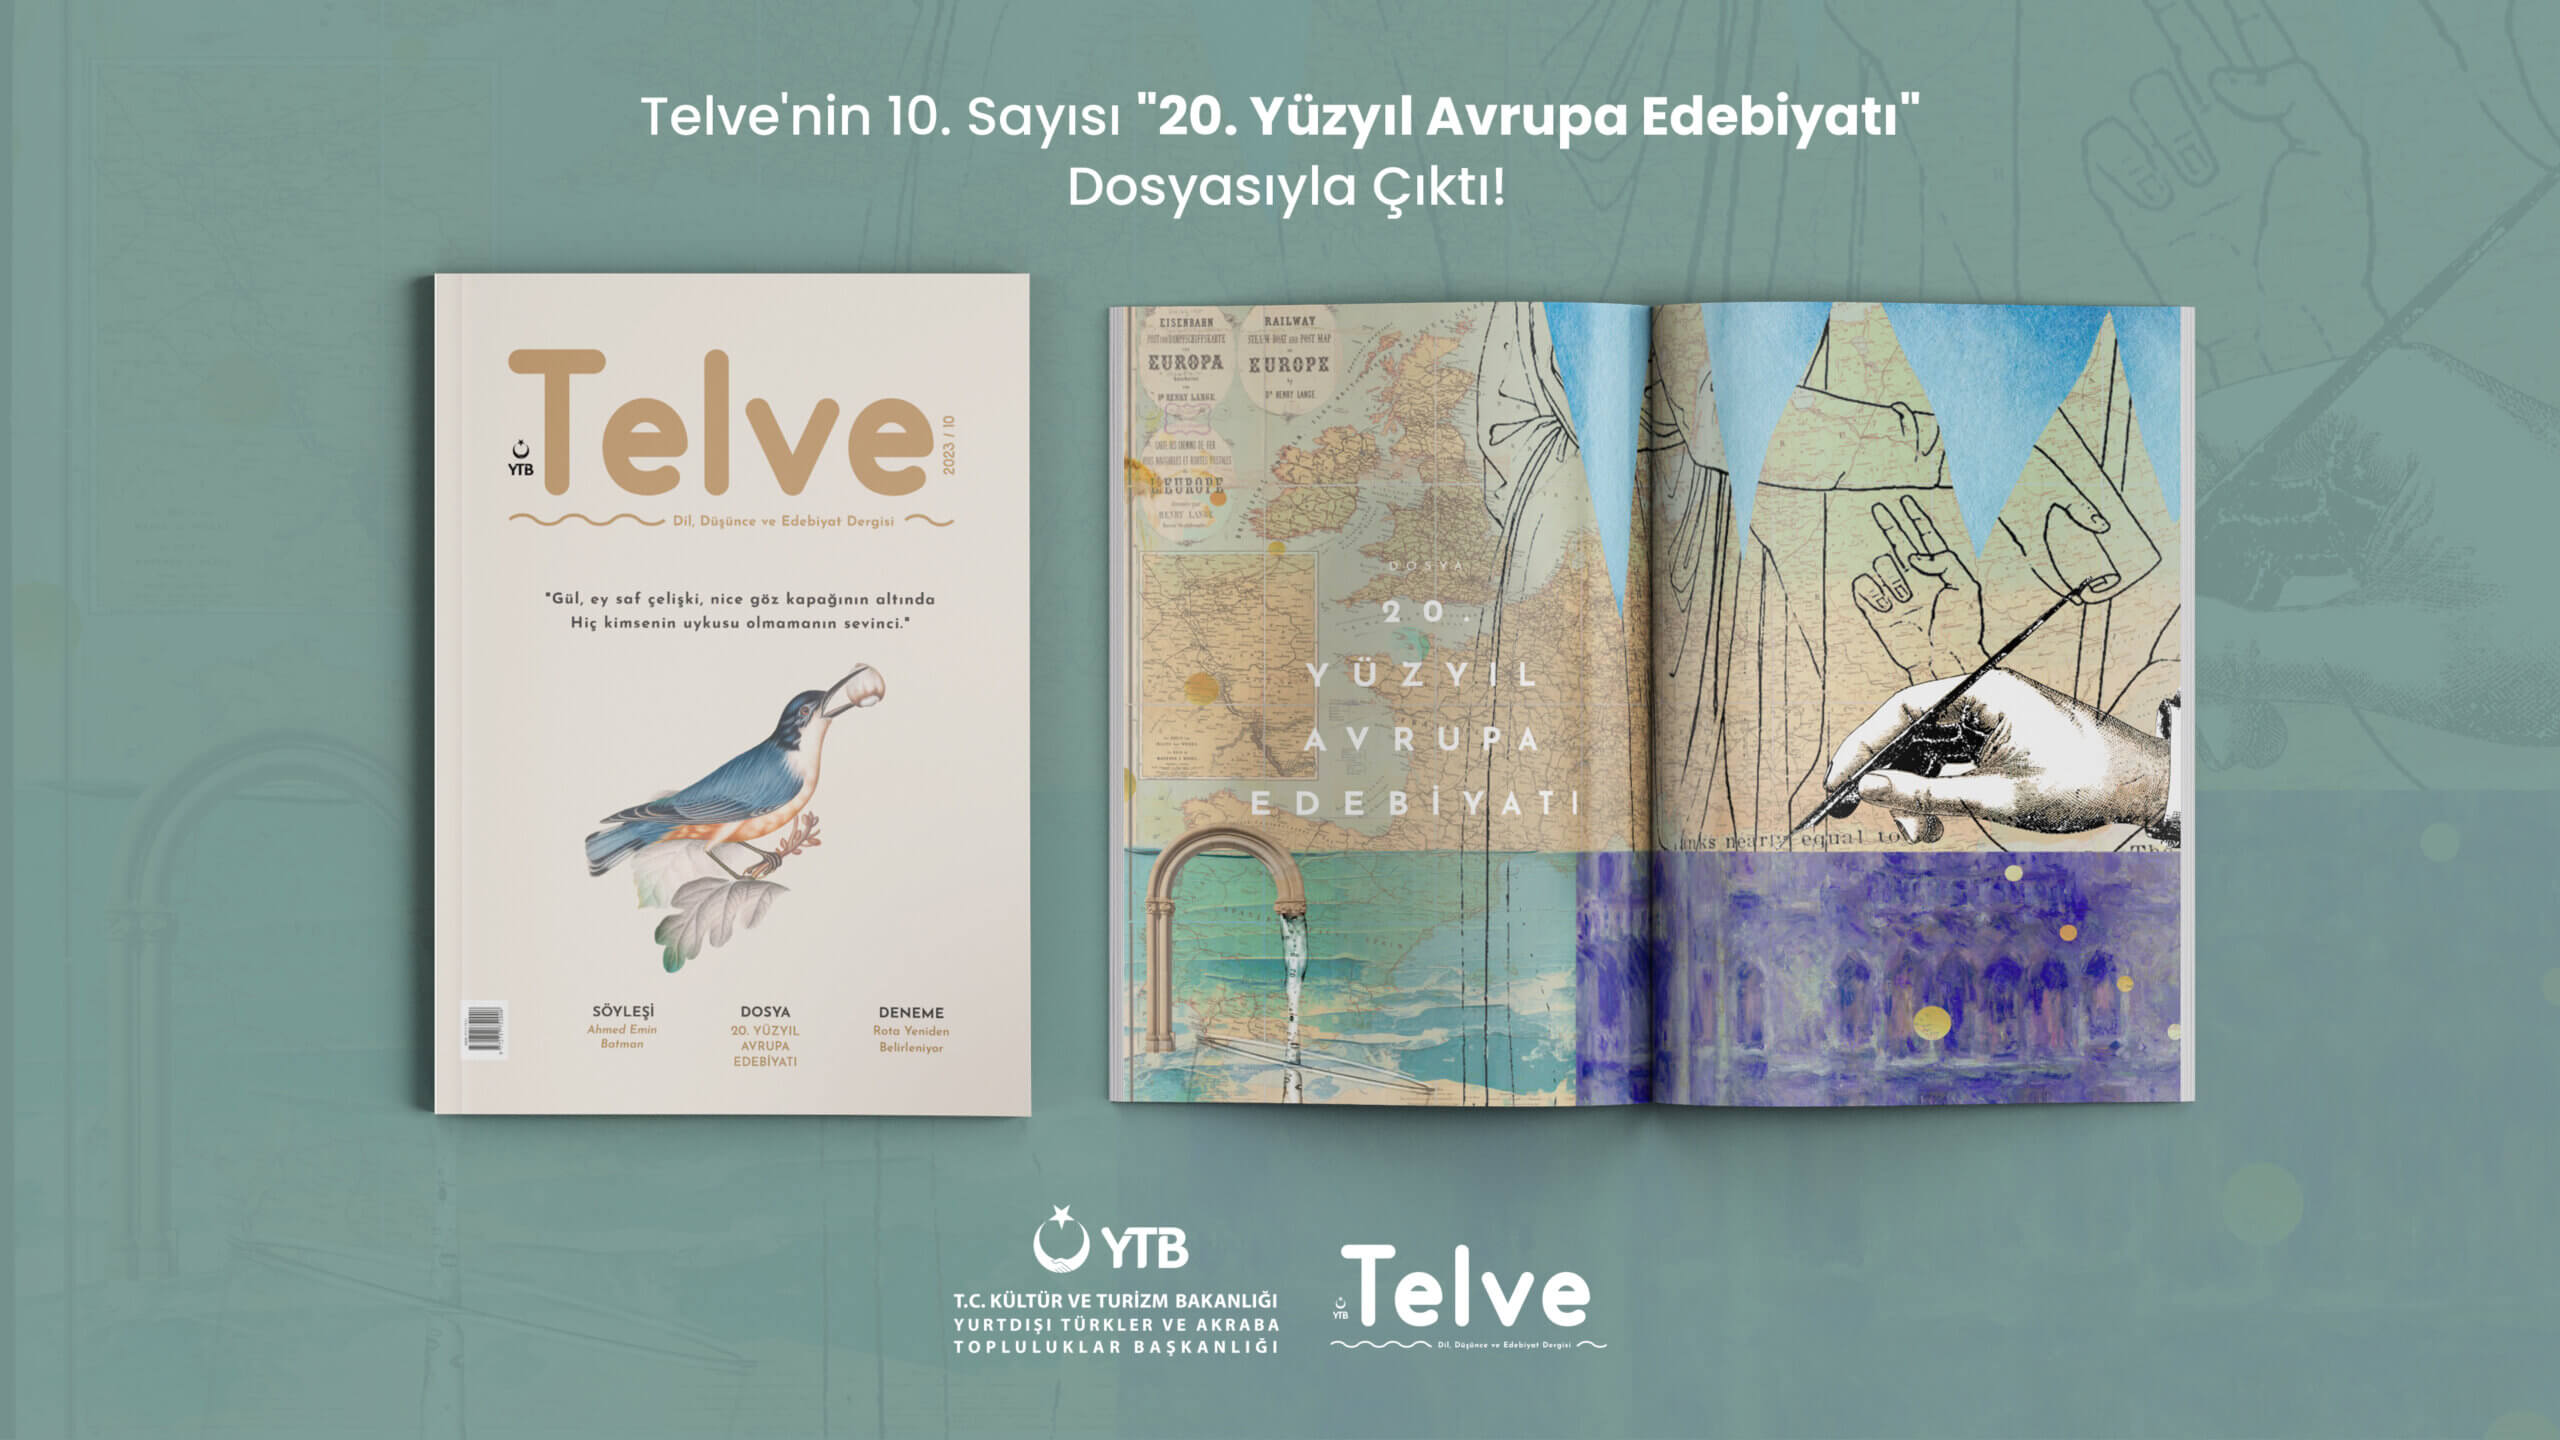 Telve’nin 10. Sayısı “20. Yüzyıl Avrupa Edebiyatı” Dosyasıyla Çıktı!